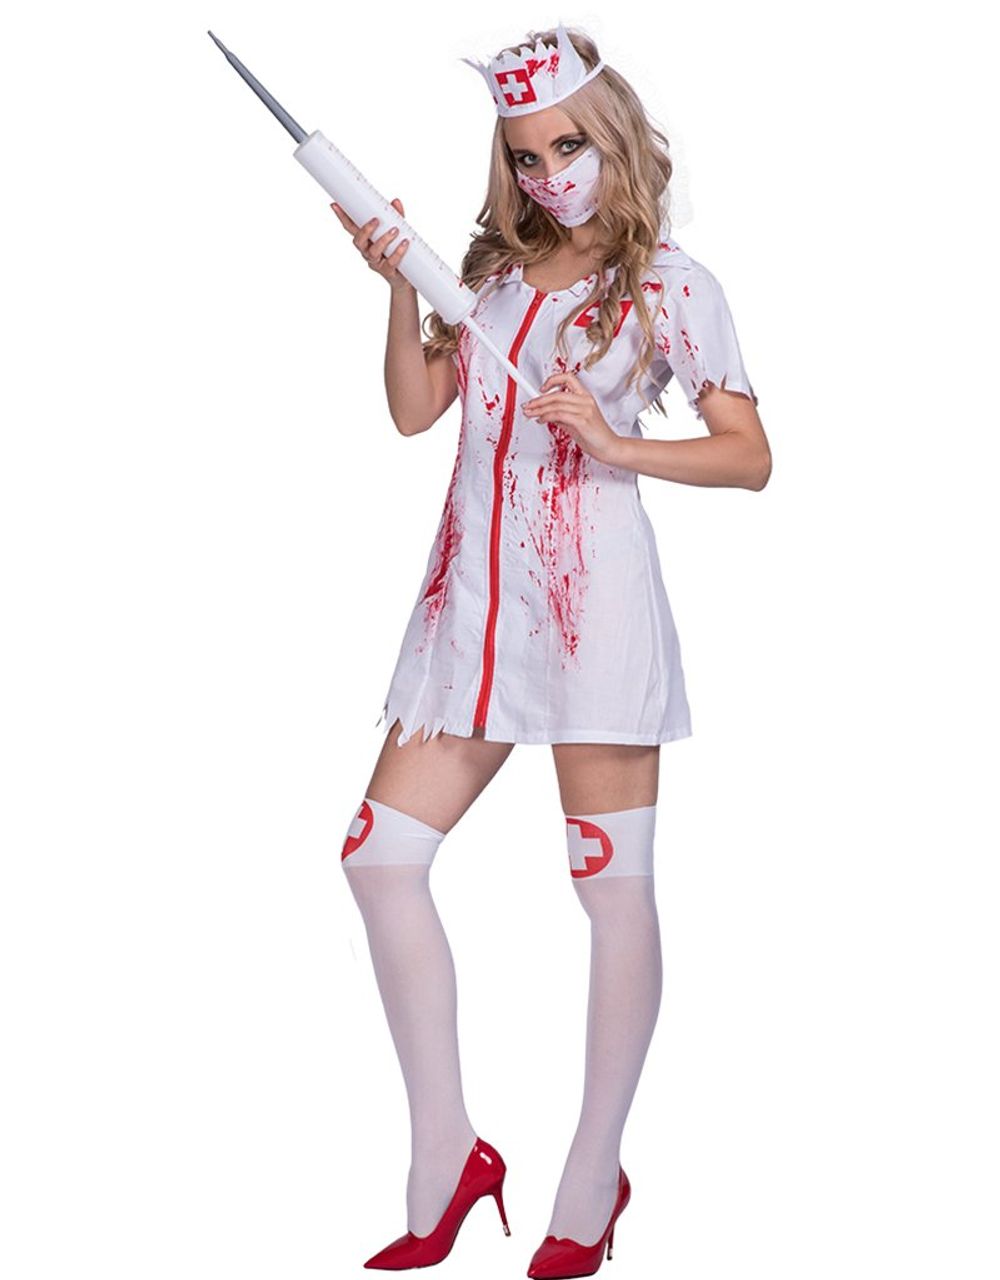 EraSpooky Halloween Killer Caregiver Disfraz de enfermera zombie sangrienta para mujer